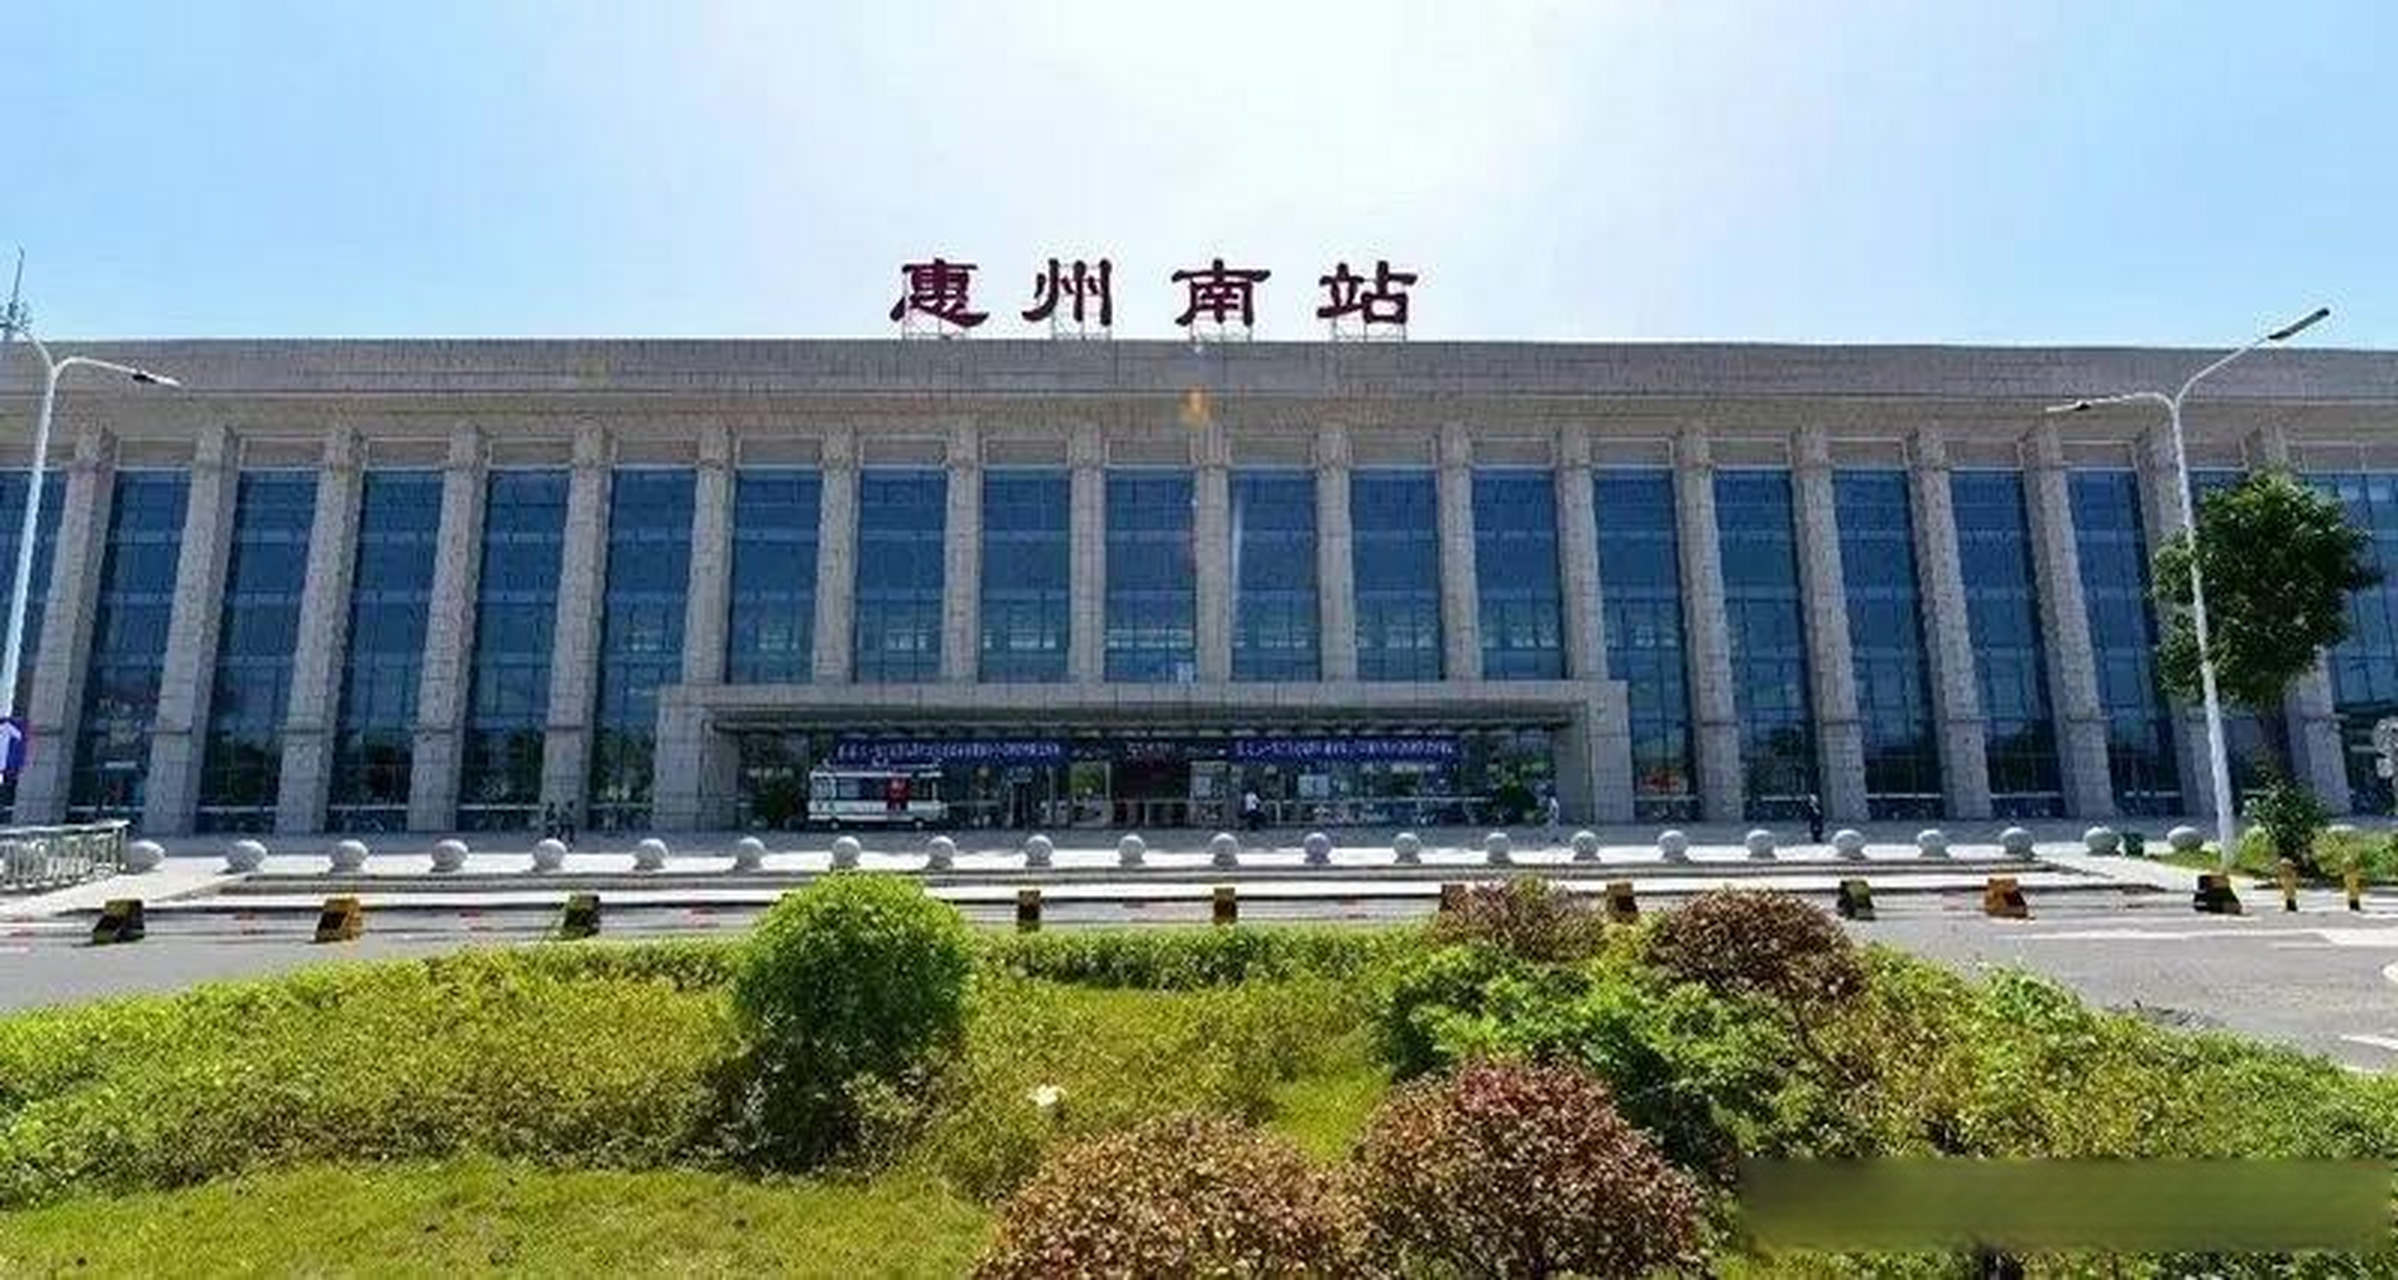 惠州南站正式更名为惠阳站,惠城南站则更名为惠州南站,明显就是拉台